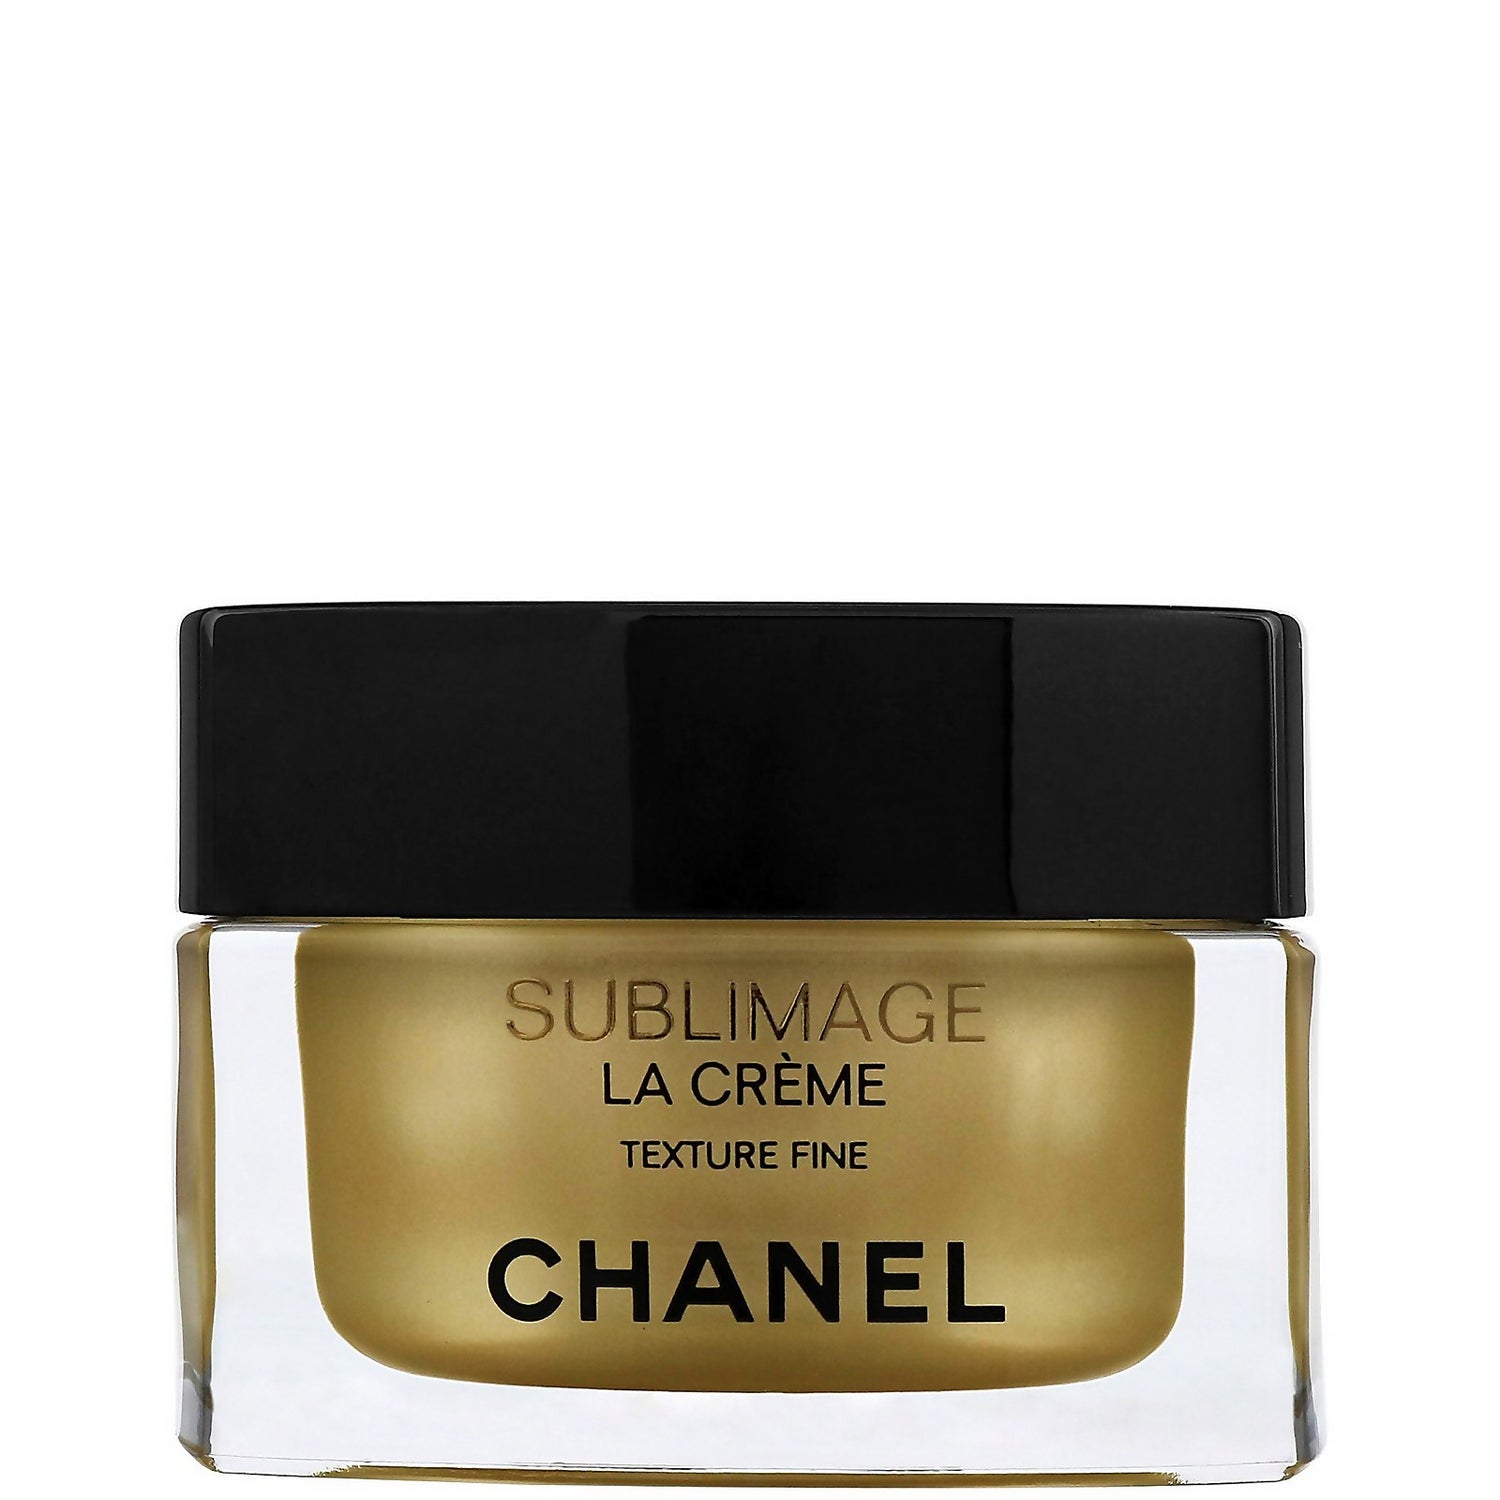 Chanel Sublimage La Creme La Creme Texture Fine 50 g